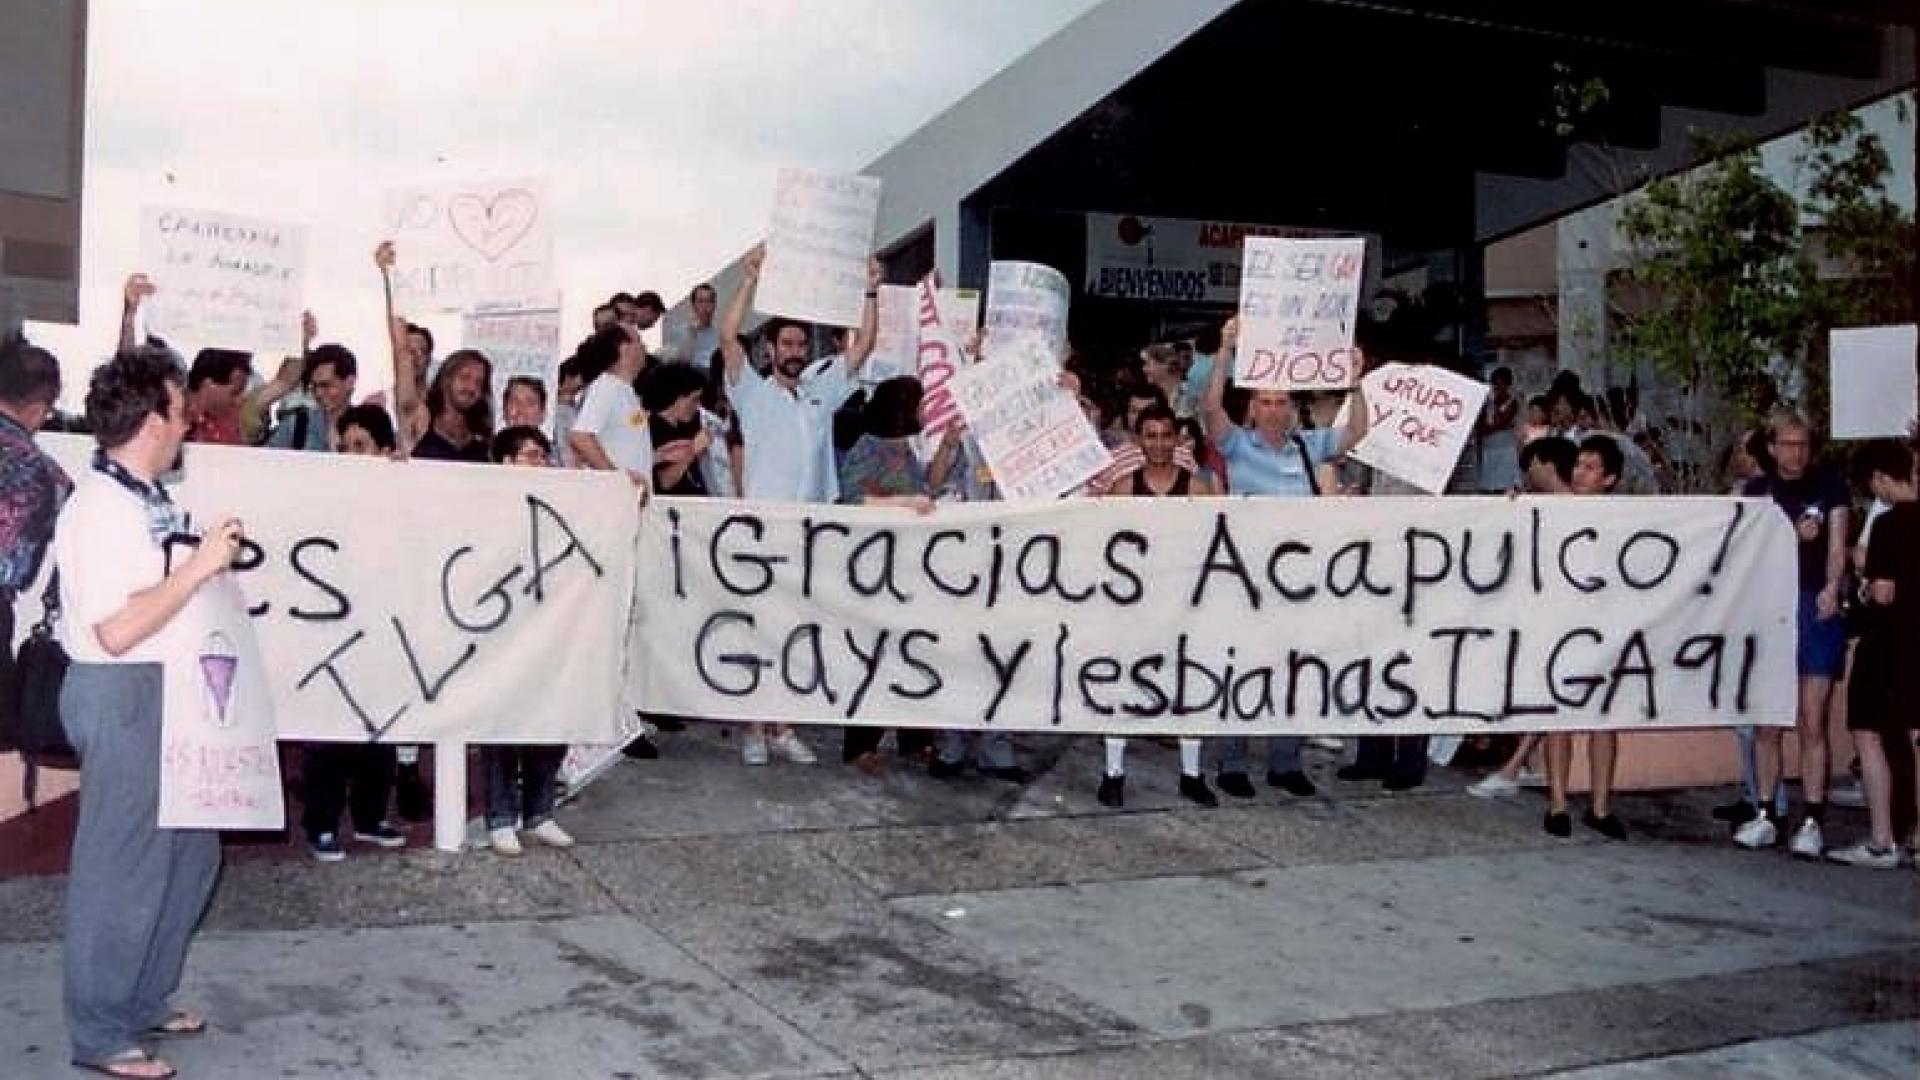 Foto van demonstratie met banner "¡Gracias Acapulco!"